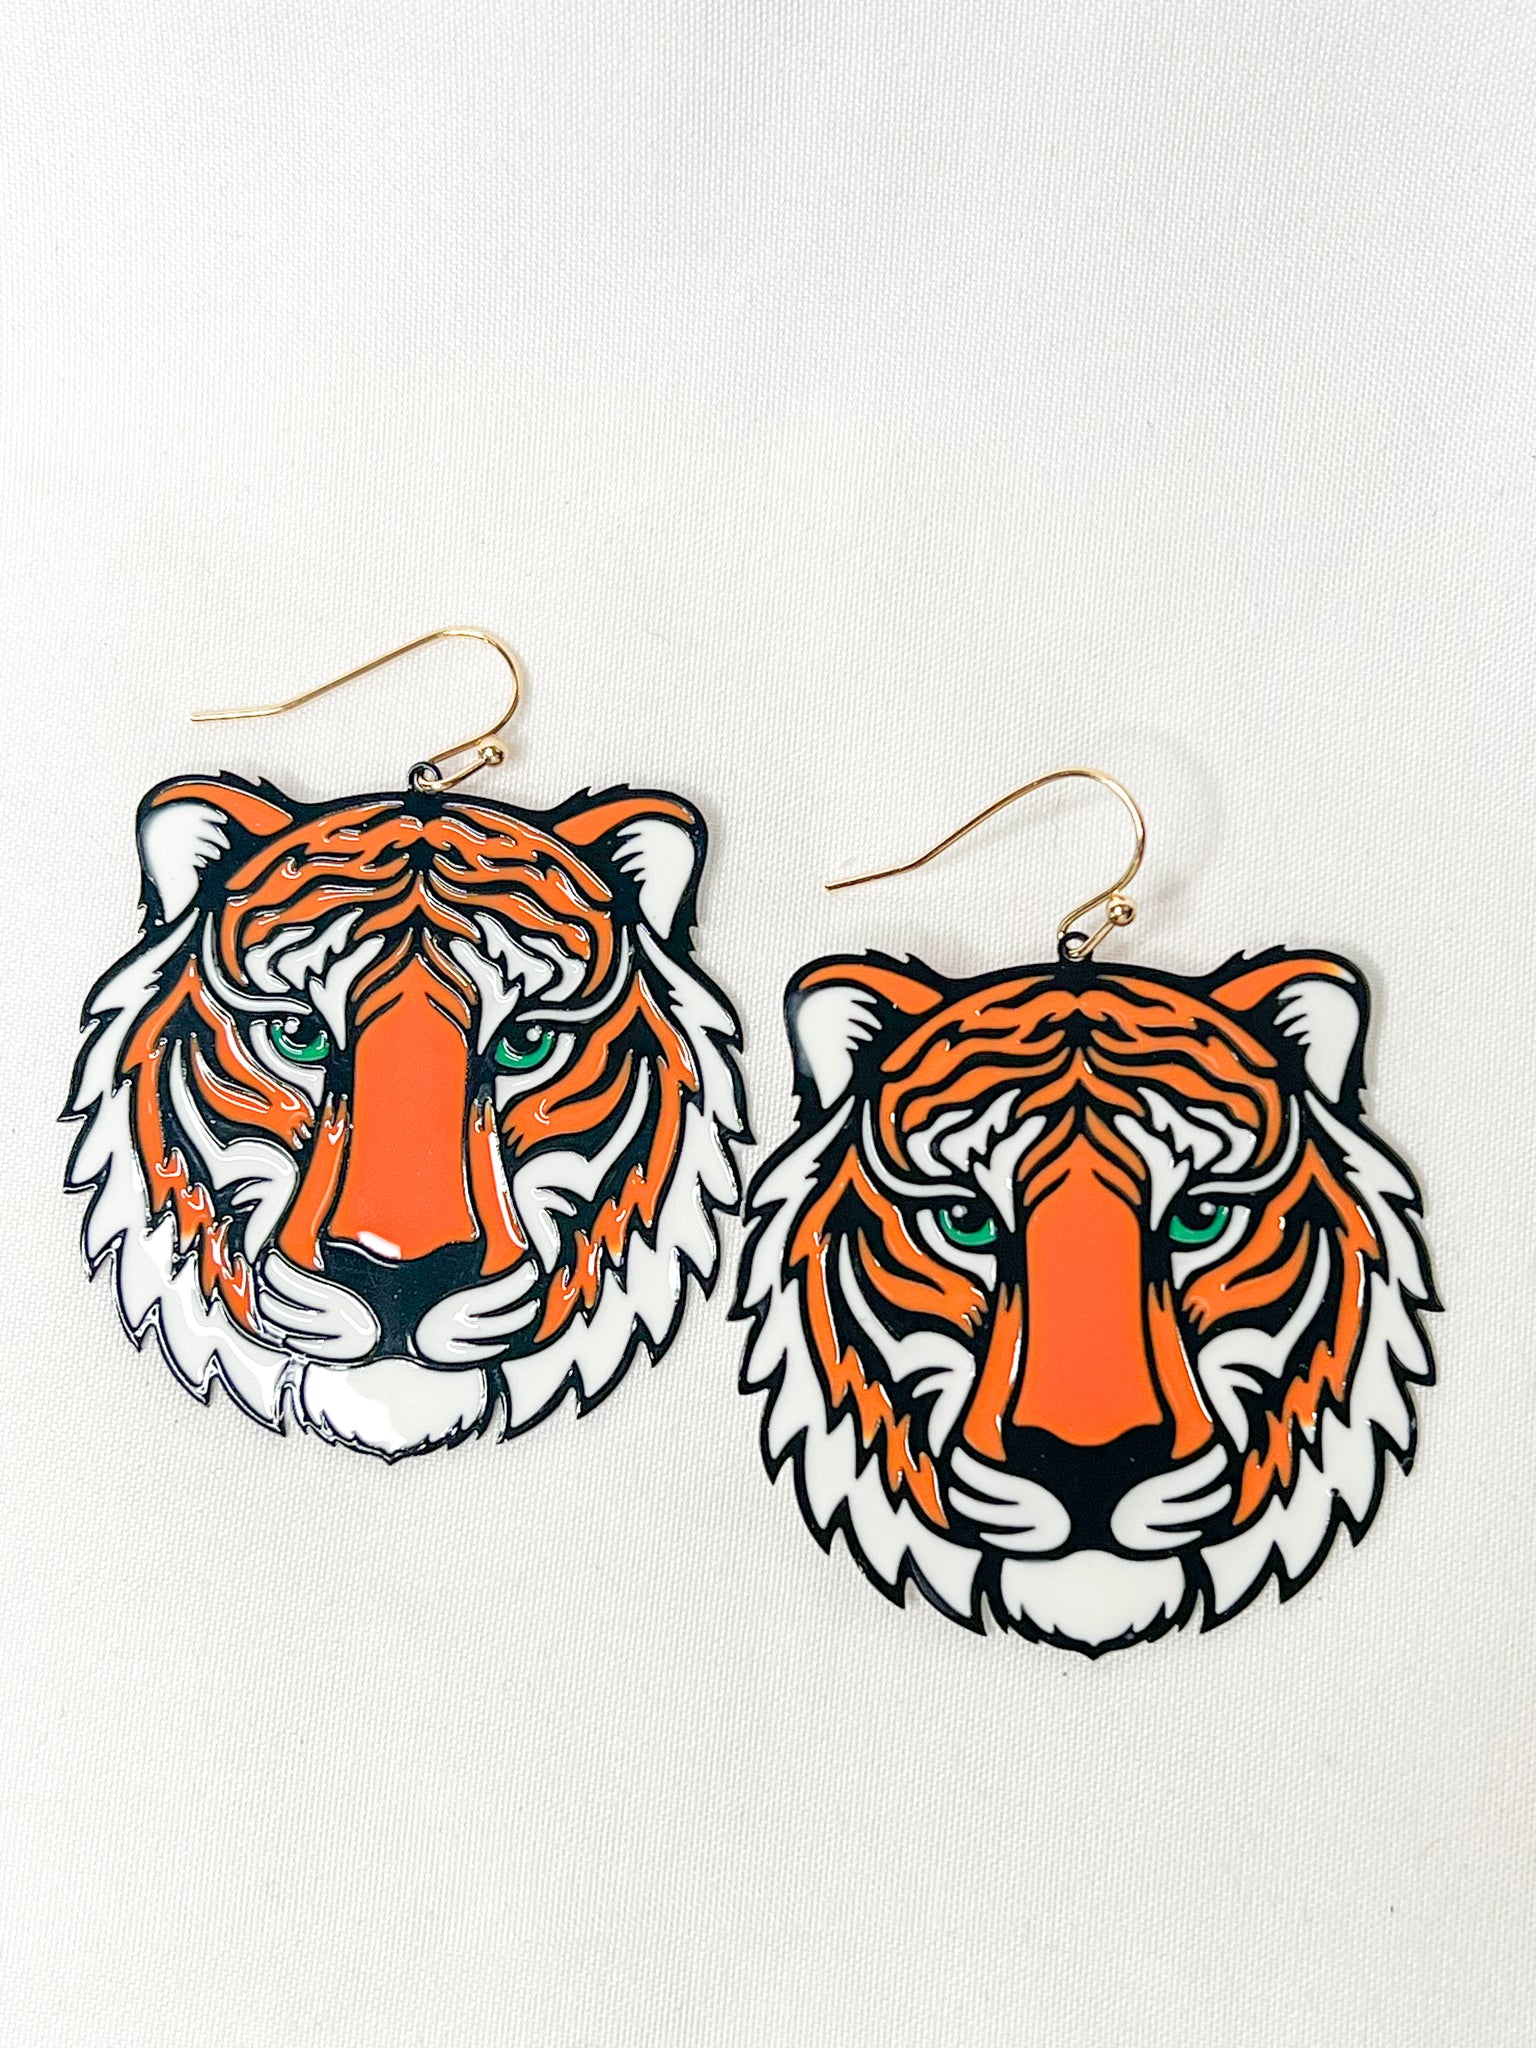 Tiger Head Earrings